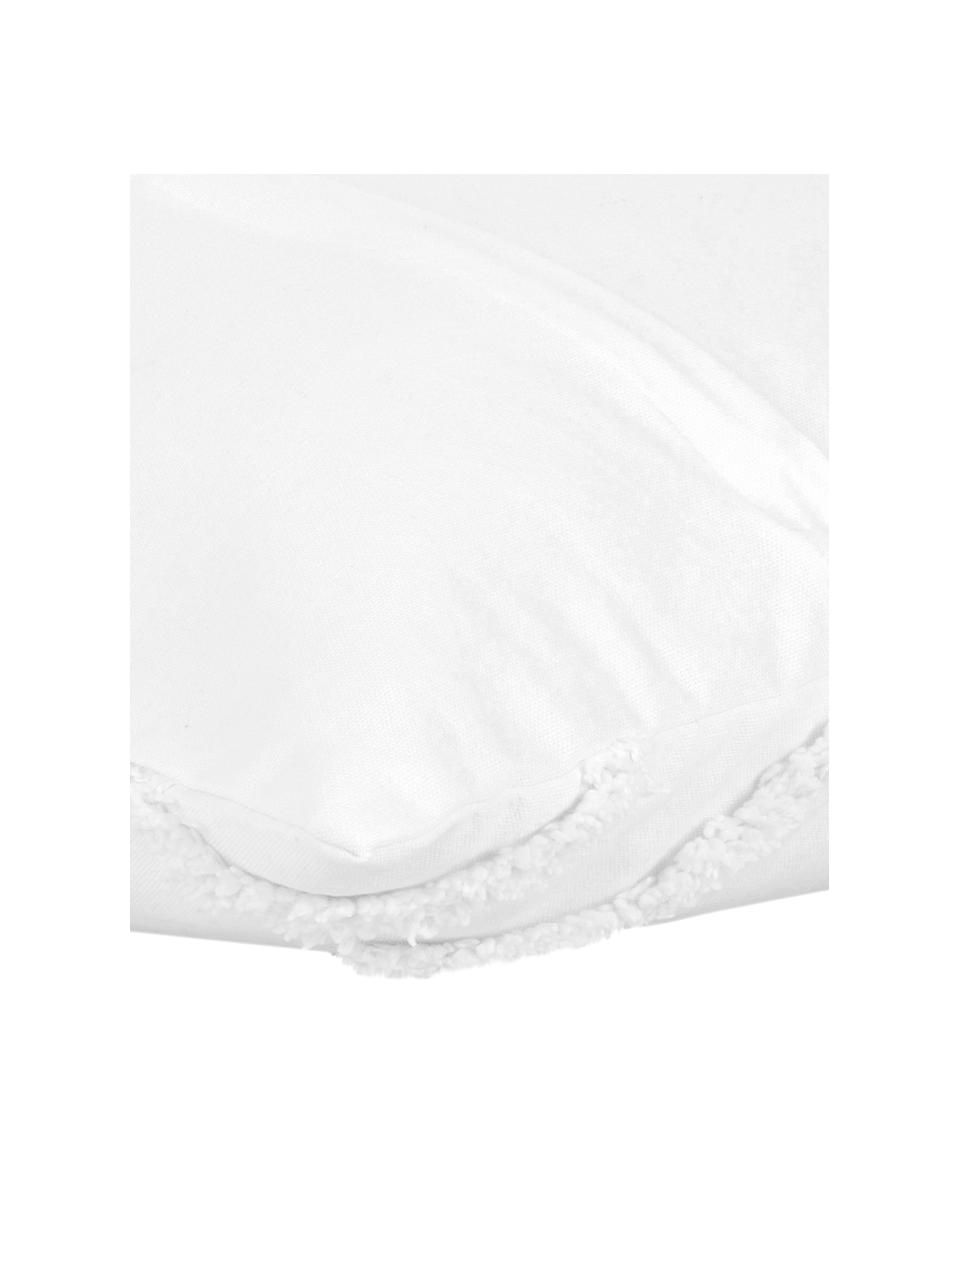 Kissenhülle Faith in Weiß mit getuftetem Rautenmuster, 100% Baumwolle, Weiß, 50 x 50 cm